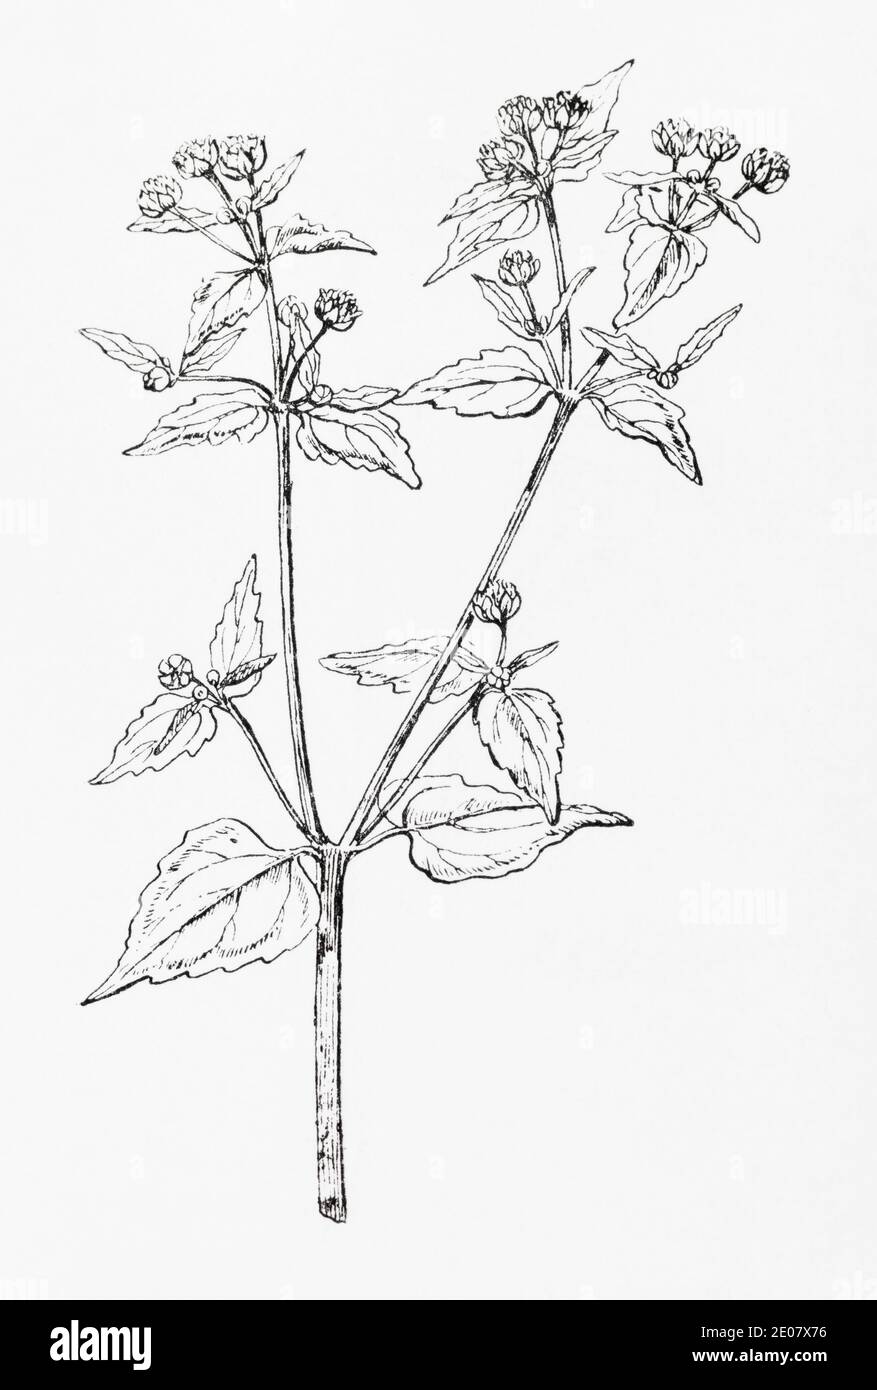 Alte botanische Illustration Gravur von Gallant Soldier / Galinsoga parviflora. Traditionelle Heilkräuter Pflanze. Siehe Hinweise Stockfoto